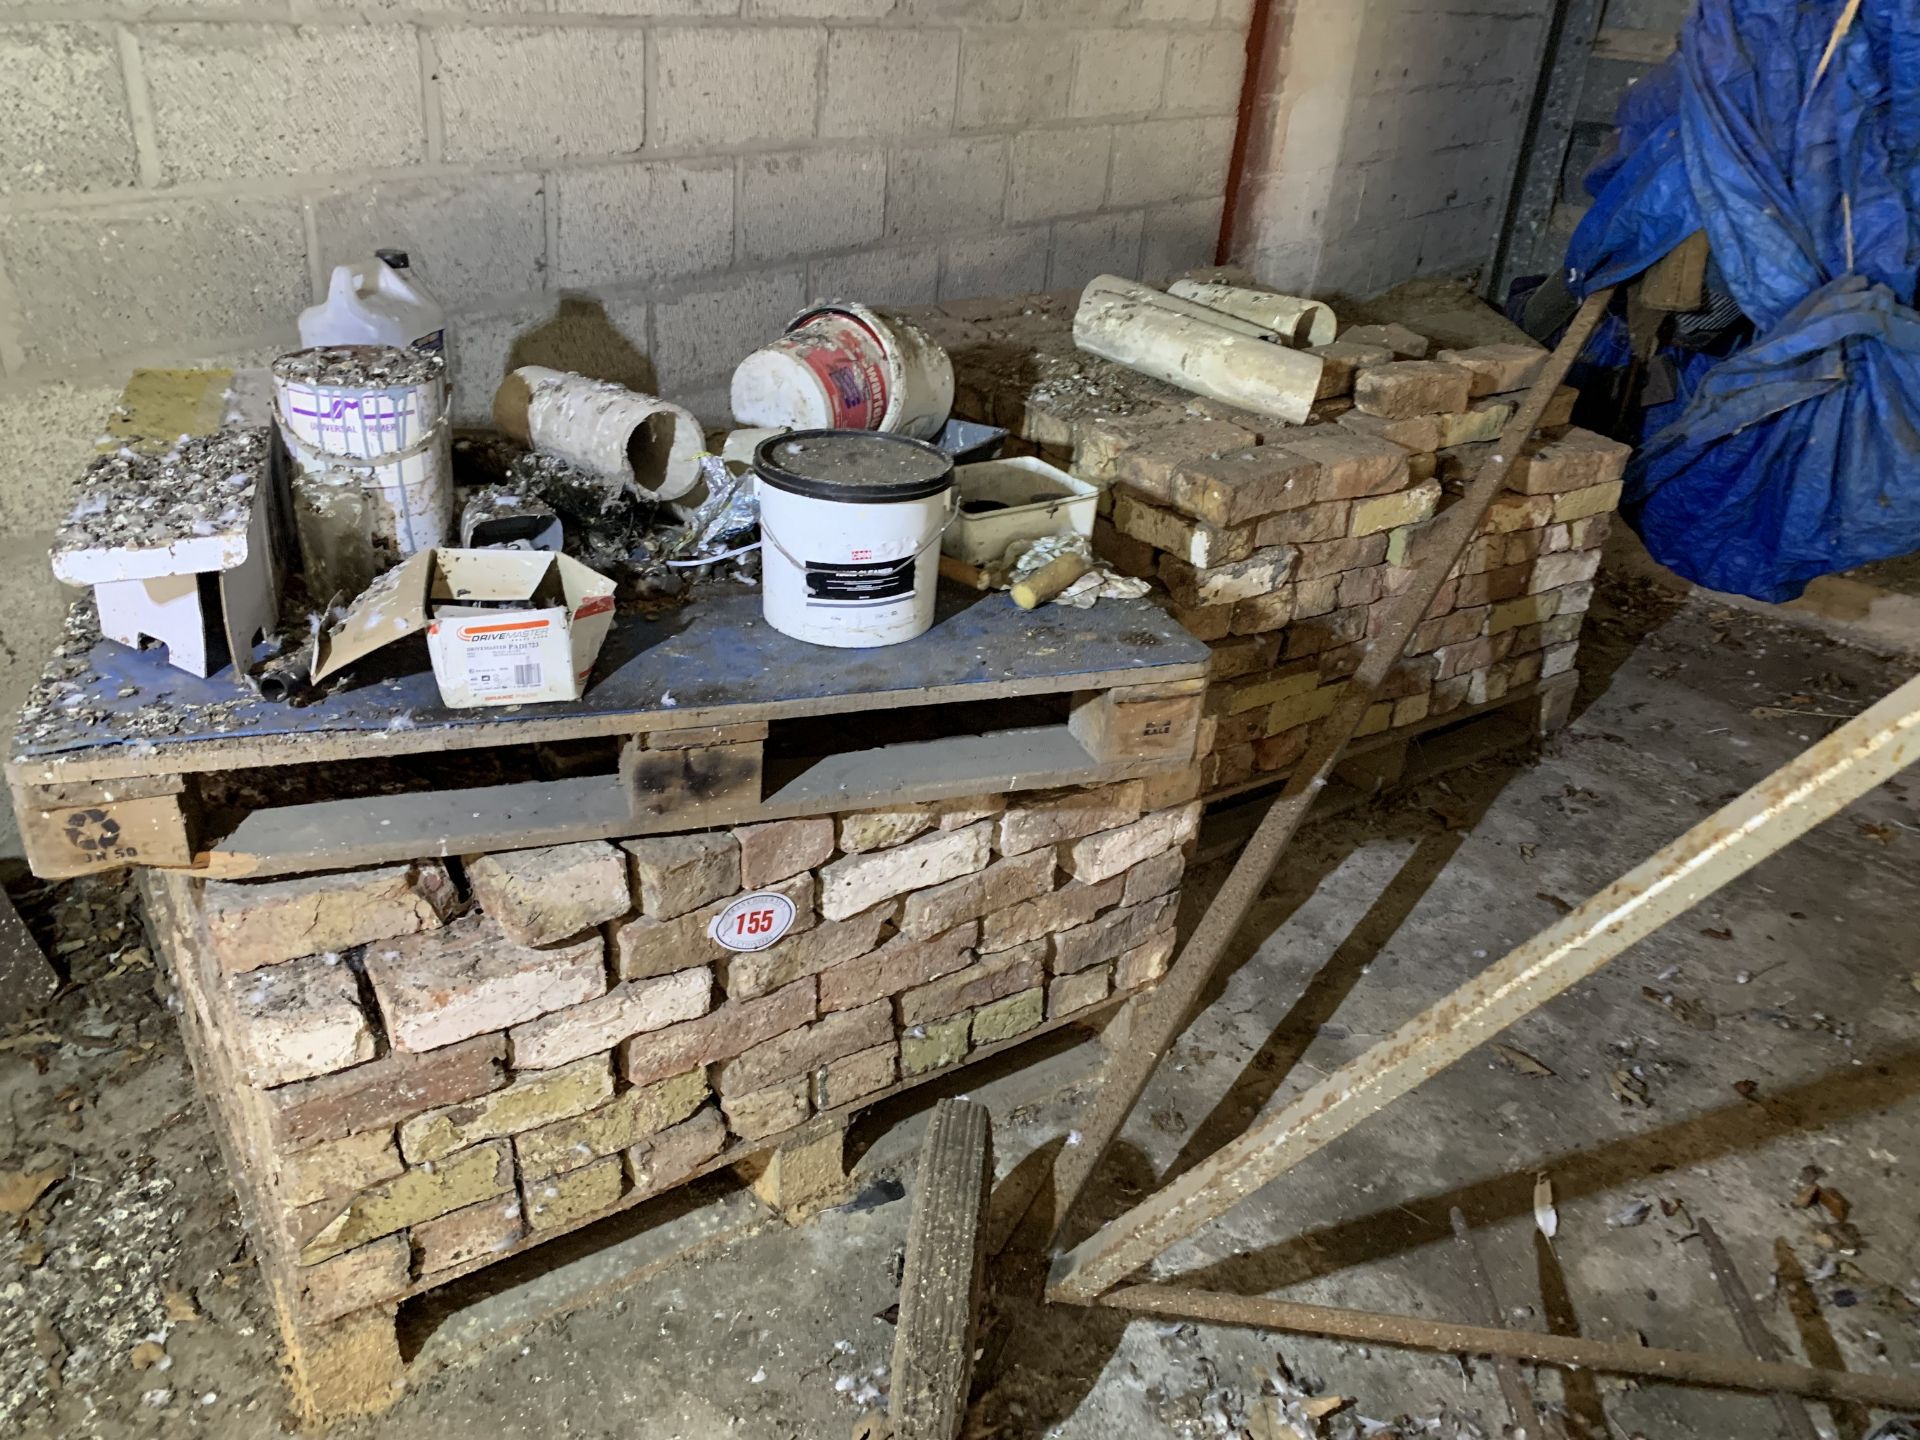 2 pallets of bricks